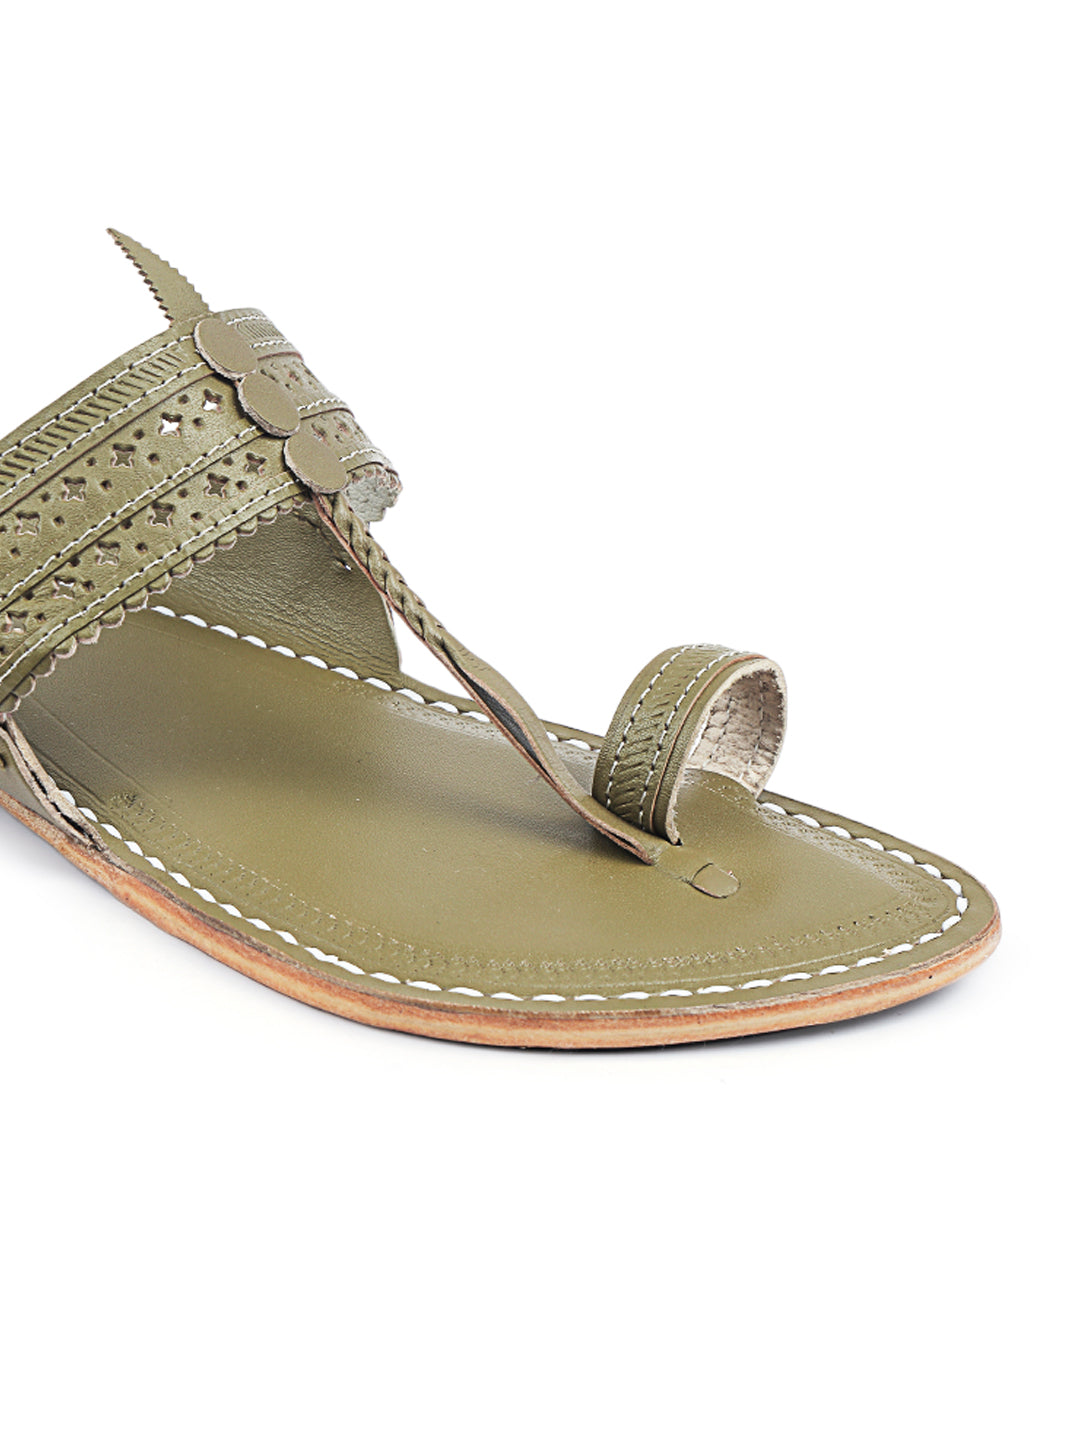 Get Grey Suede Studded Slingback Sandal at ₹ 1319 | LBB Shop